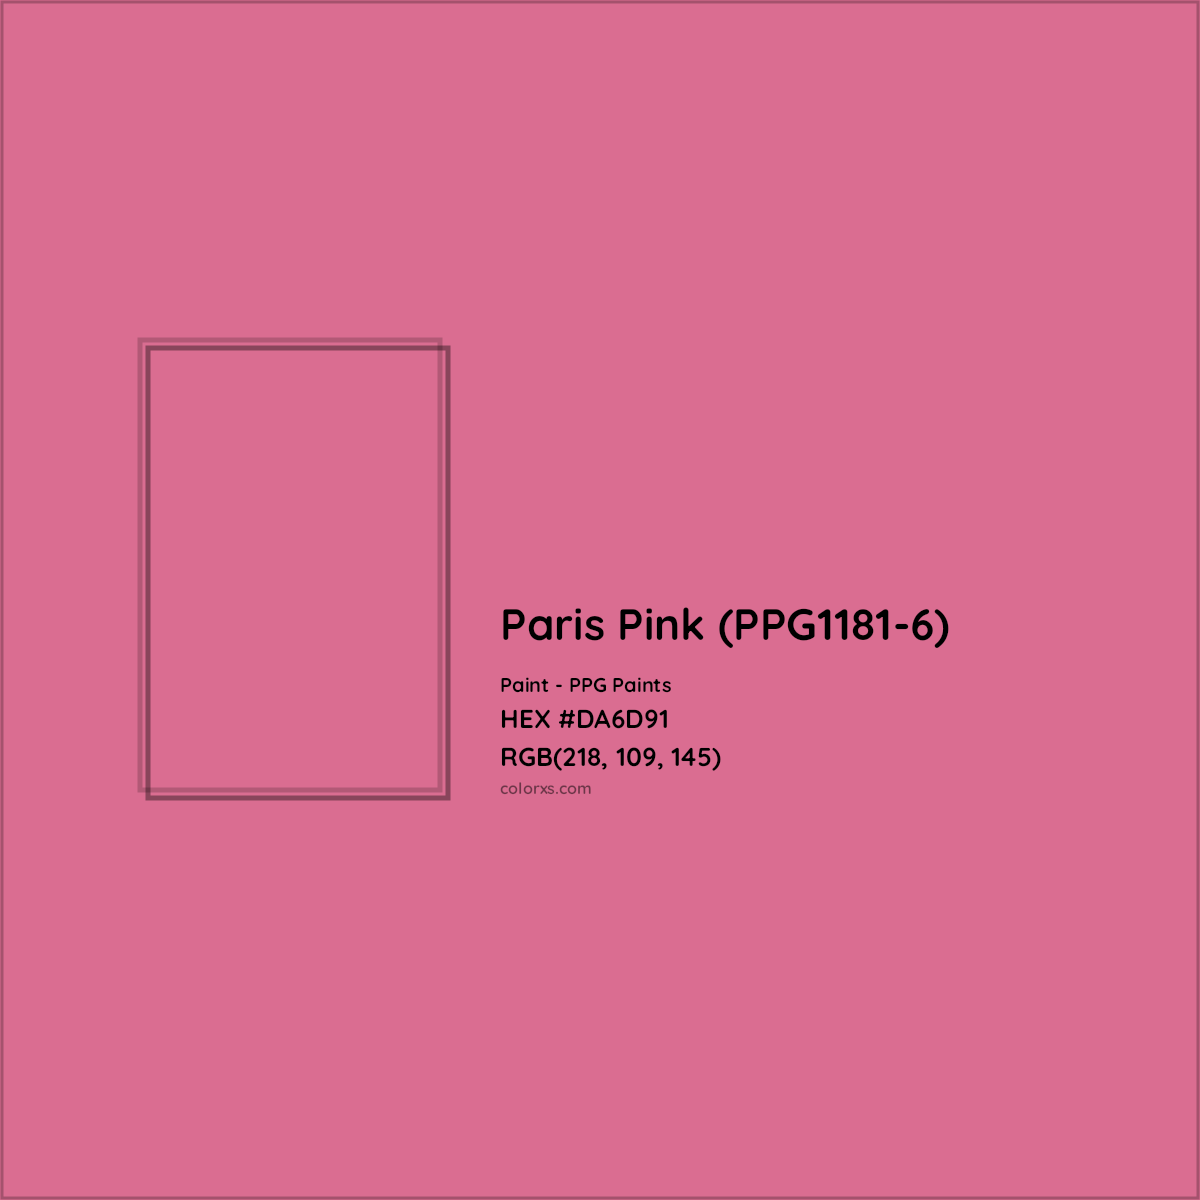 HEX #DA6D91 Paris Pink (PPG1181-6) Paint PPG Paints - Color Code